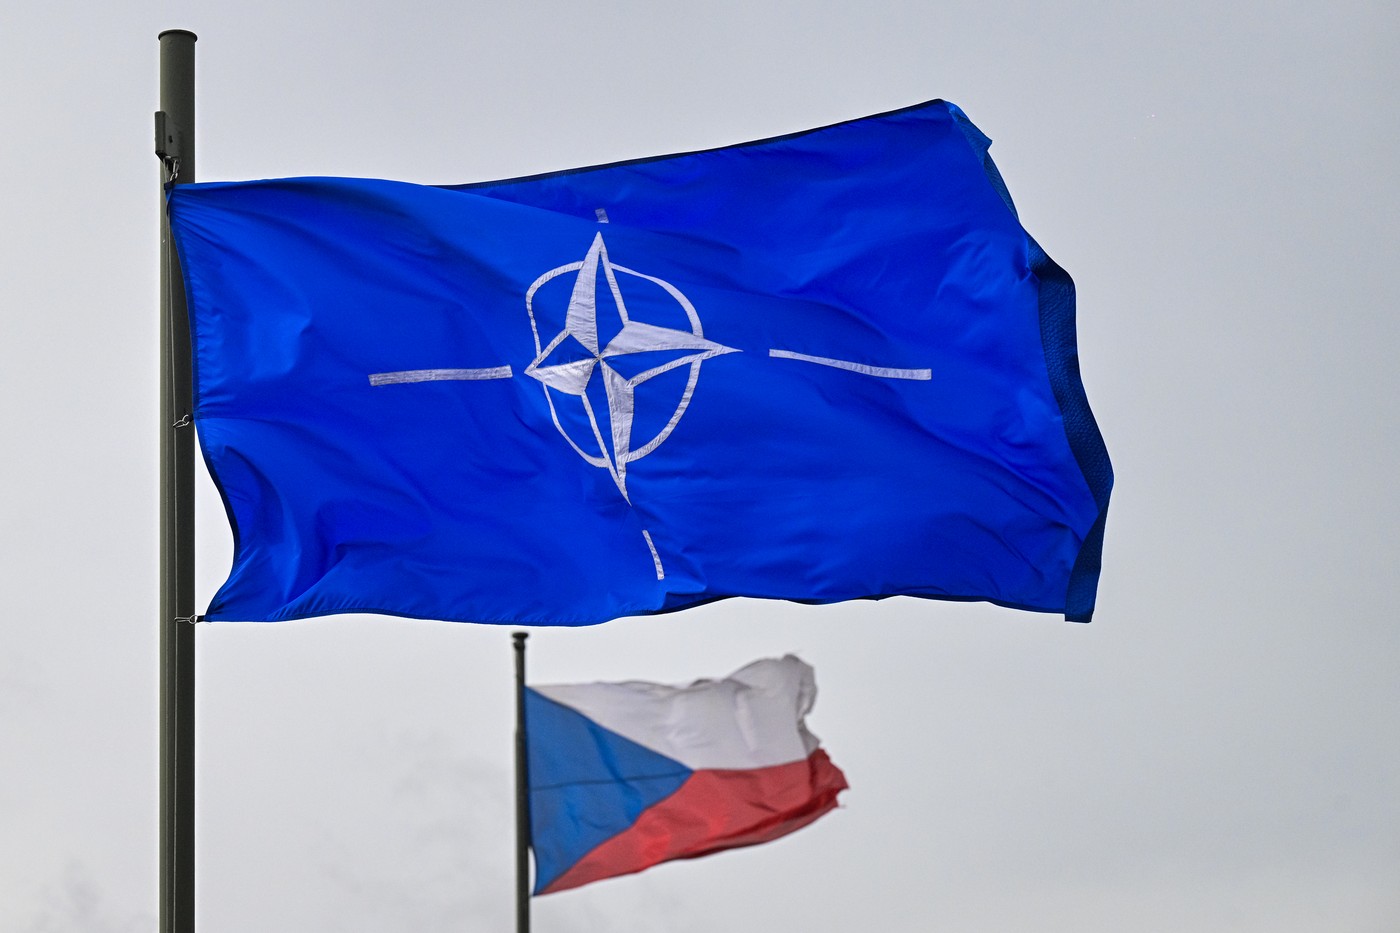 Přečtete si více ze článku Česká republika slaví 25 let v NATO